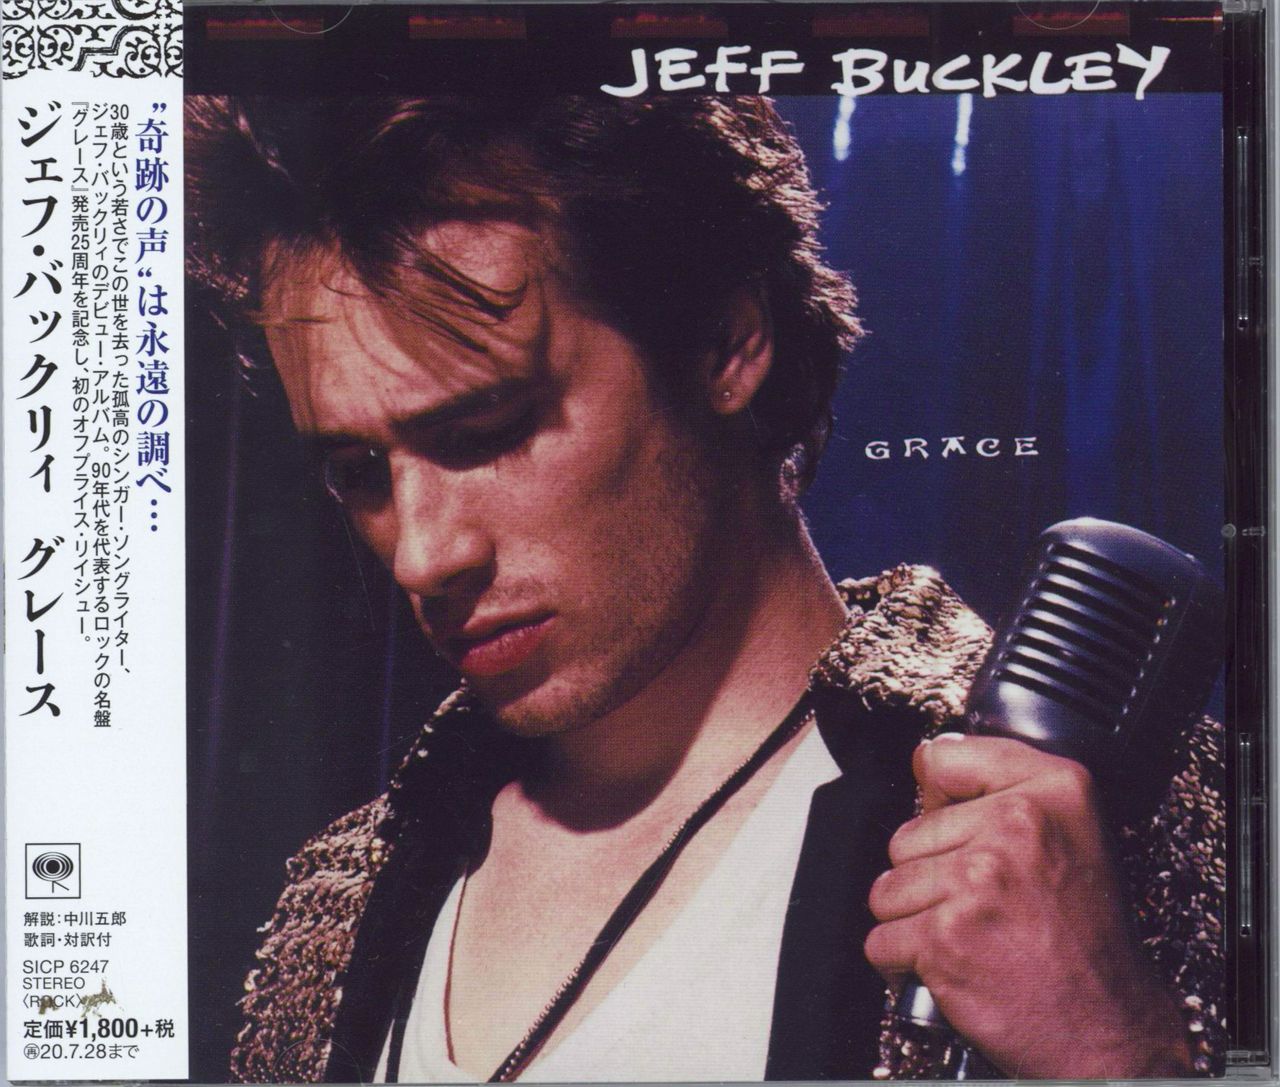 Jeff Buckley Grace Japanese CD album